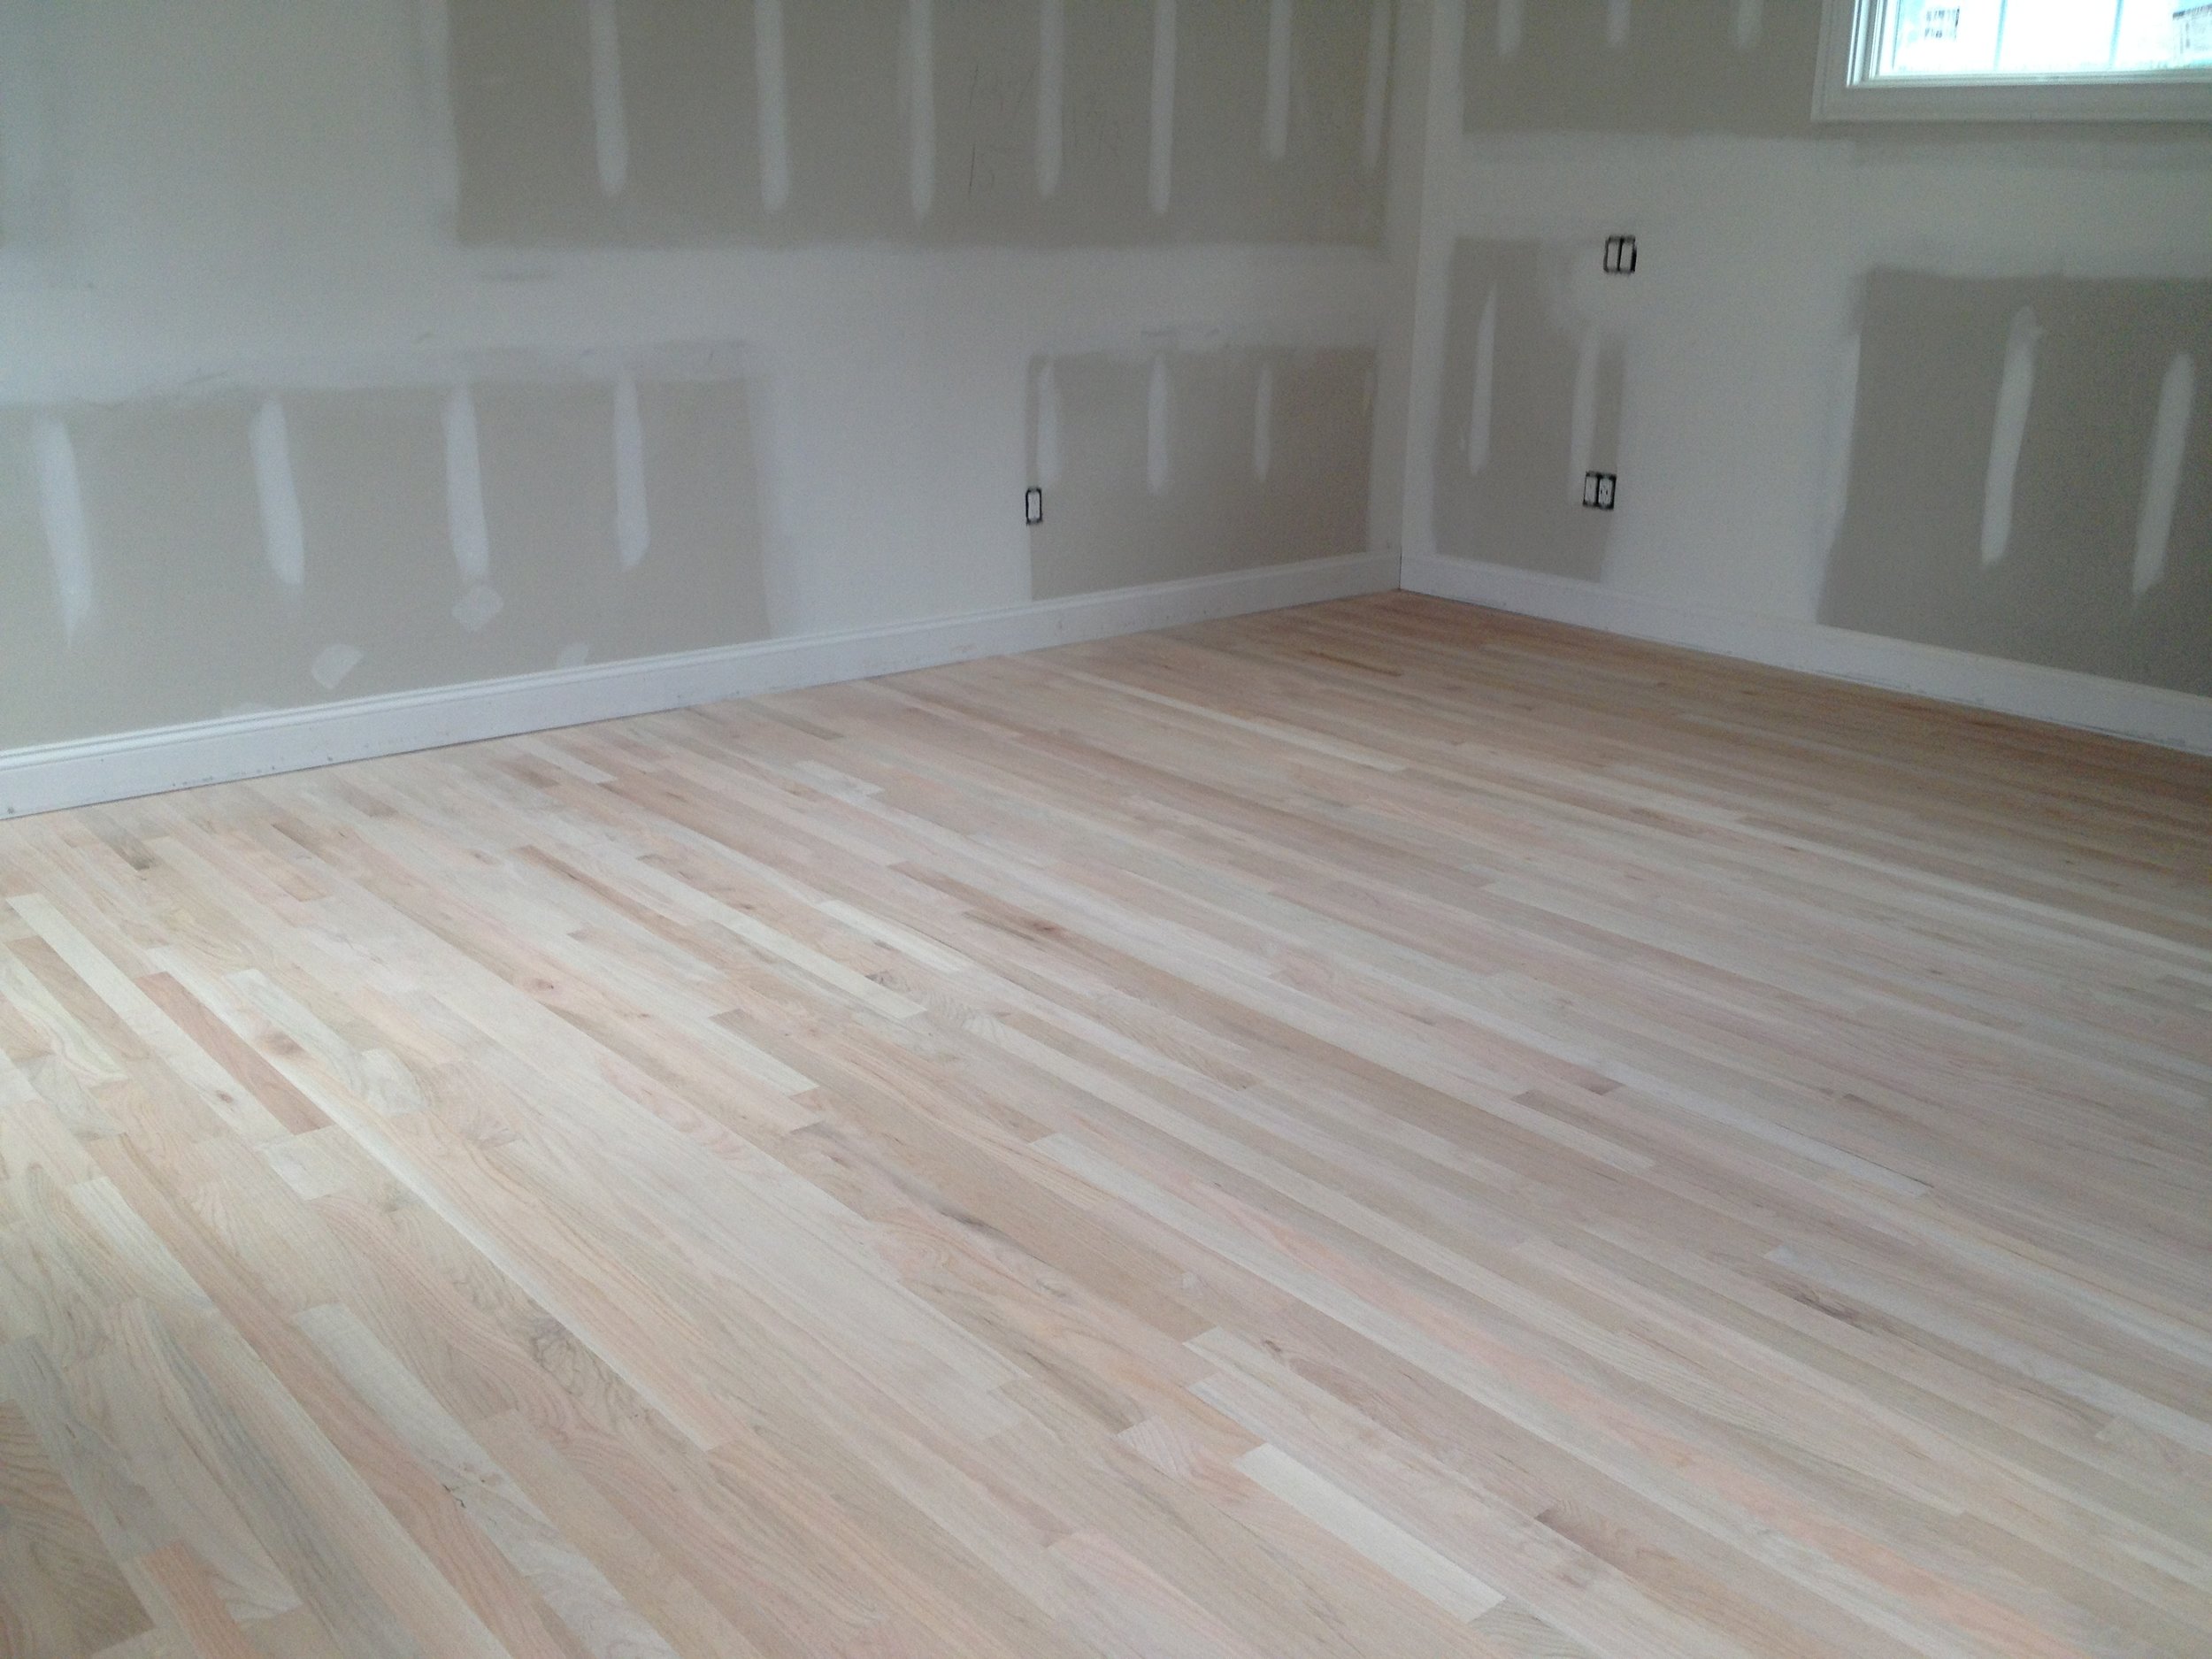 Red Oak Vs White Hardwood Flooring, Hardwood Floor Stains For White Oak